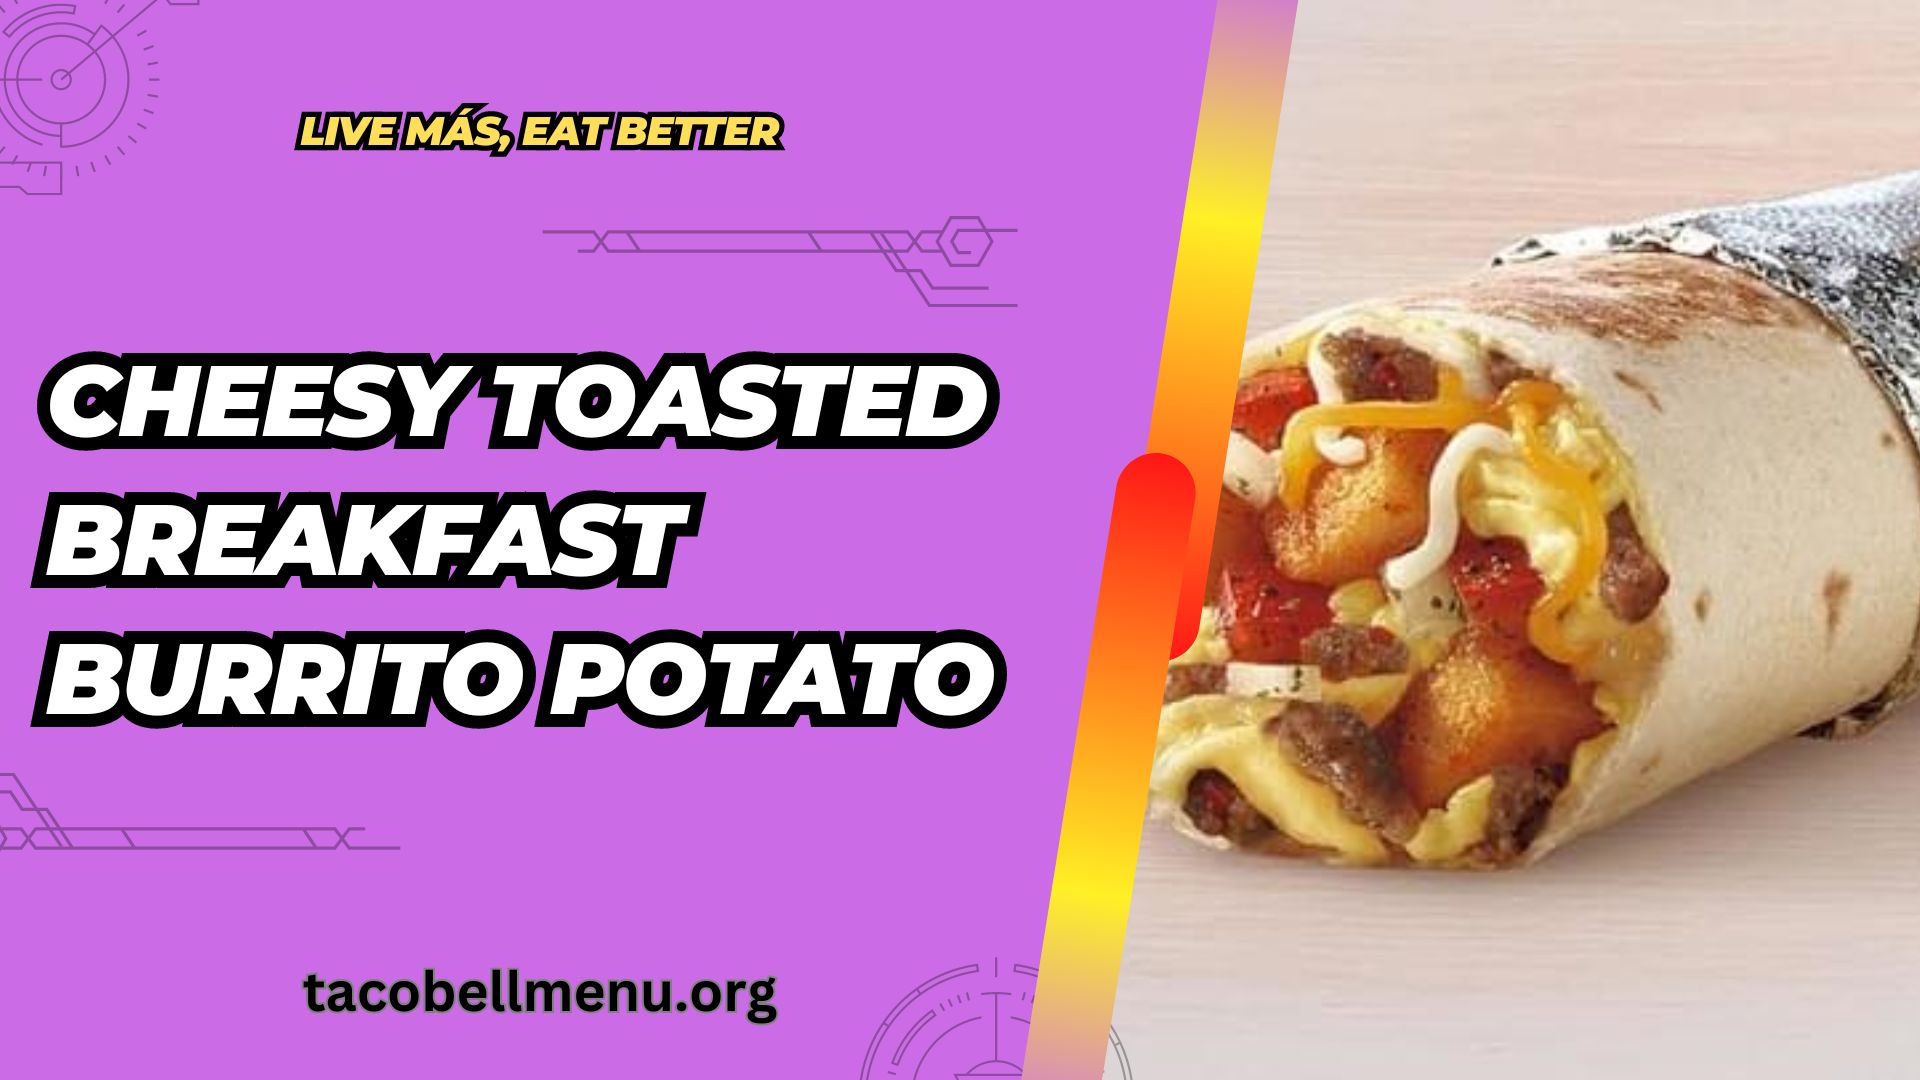 taco-bell-cheesy-toasted-breakfast-burrito-potato